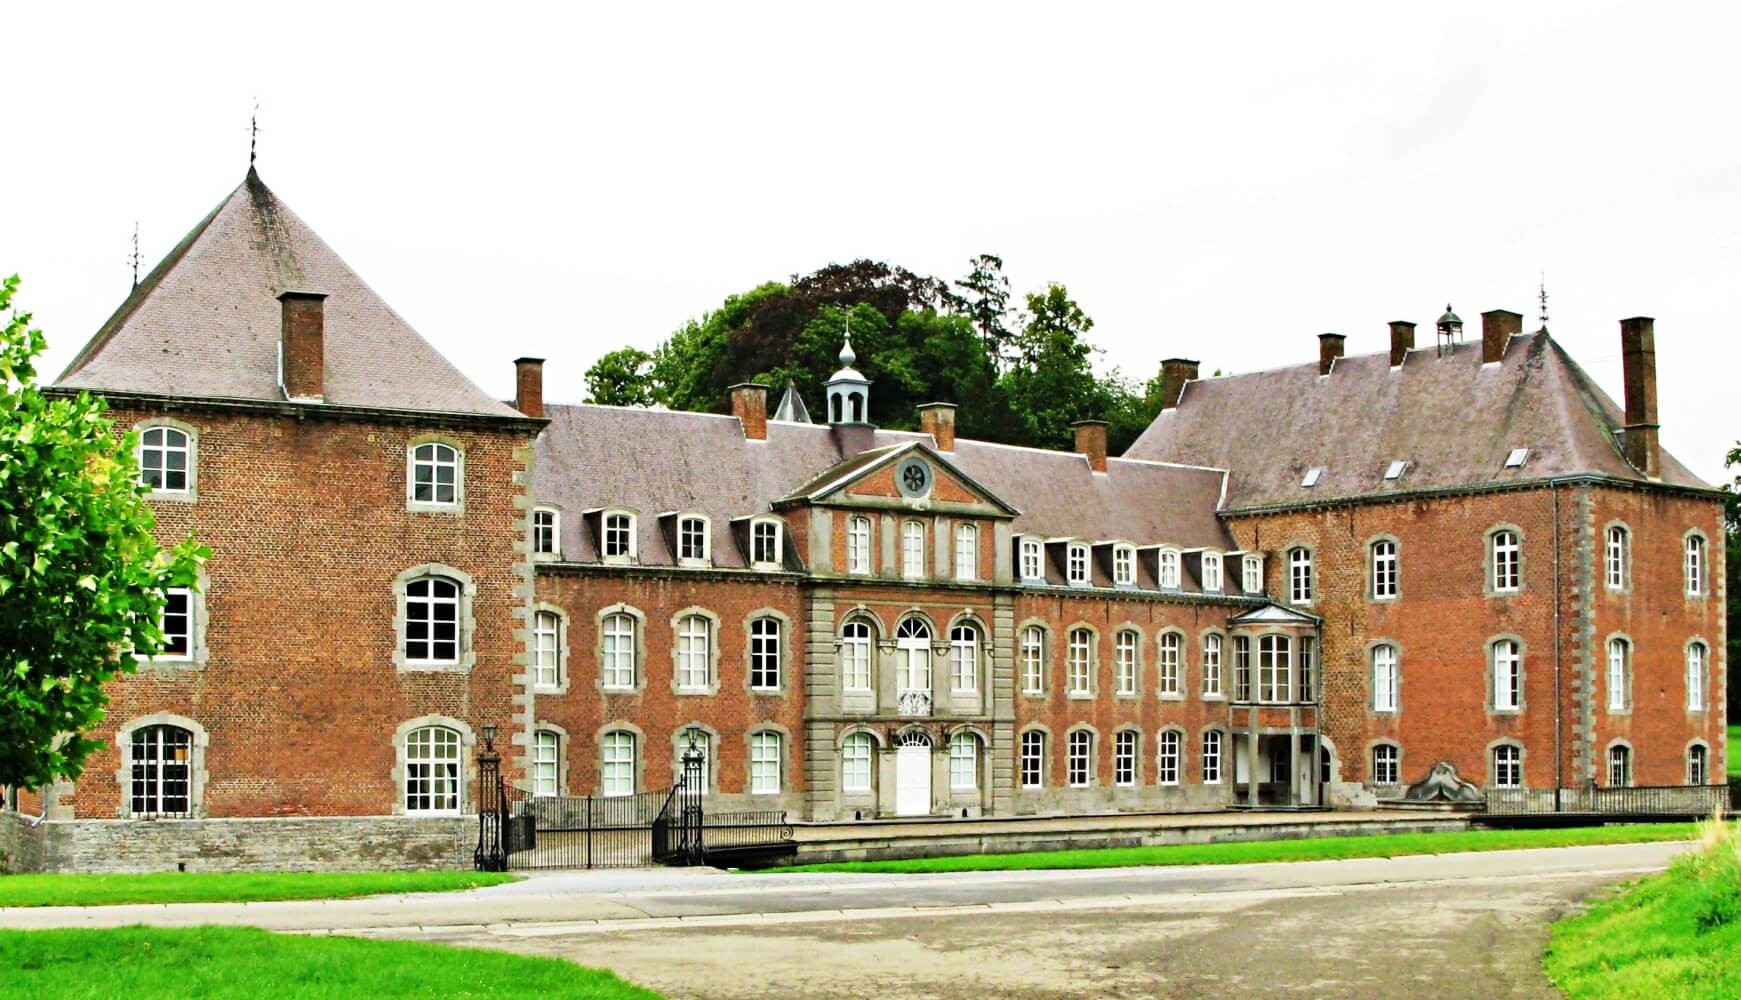 Franc-Waret Castle
